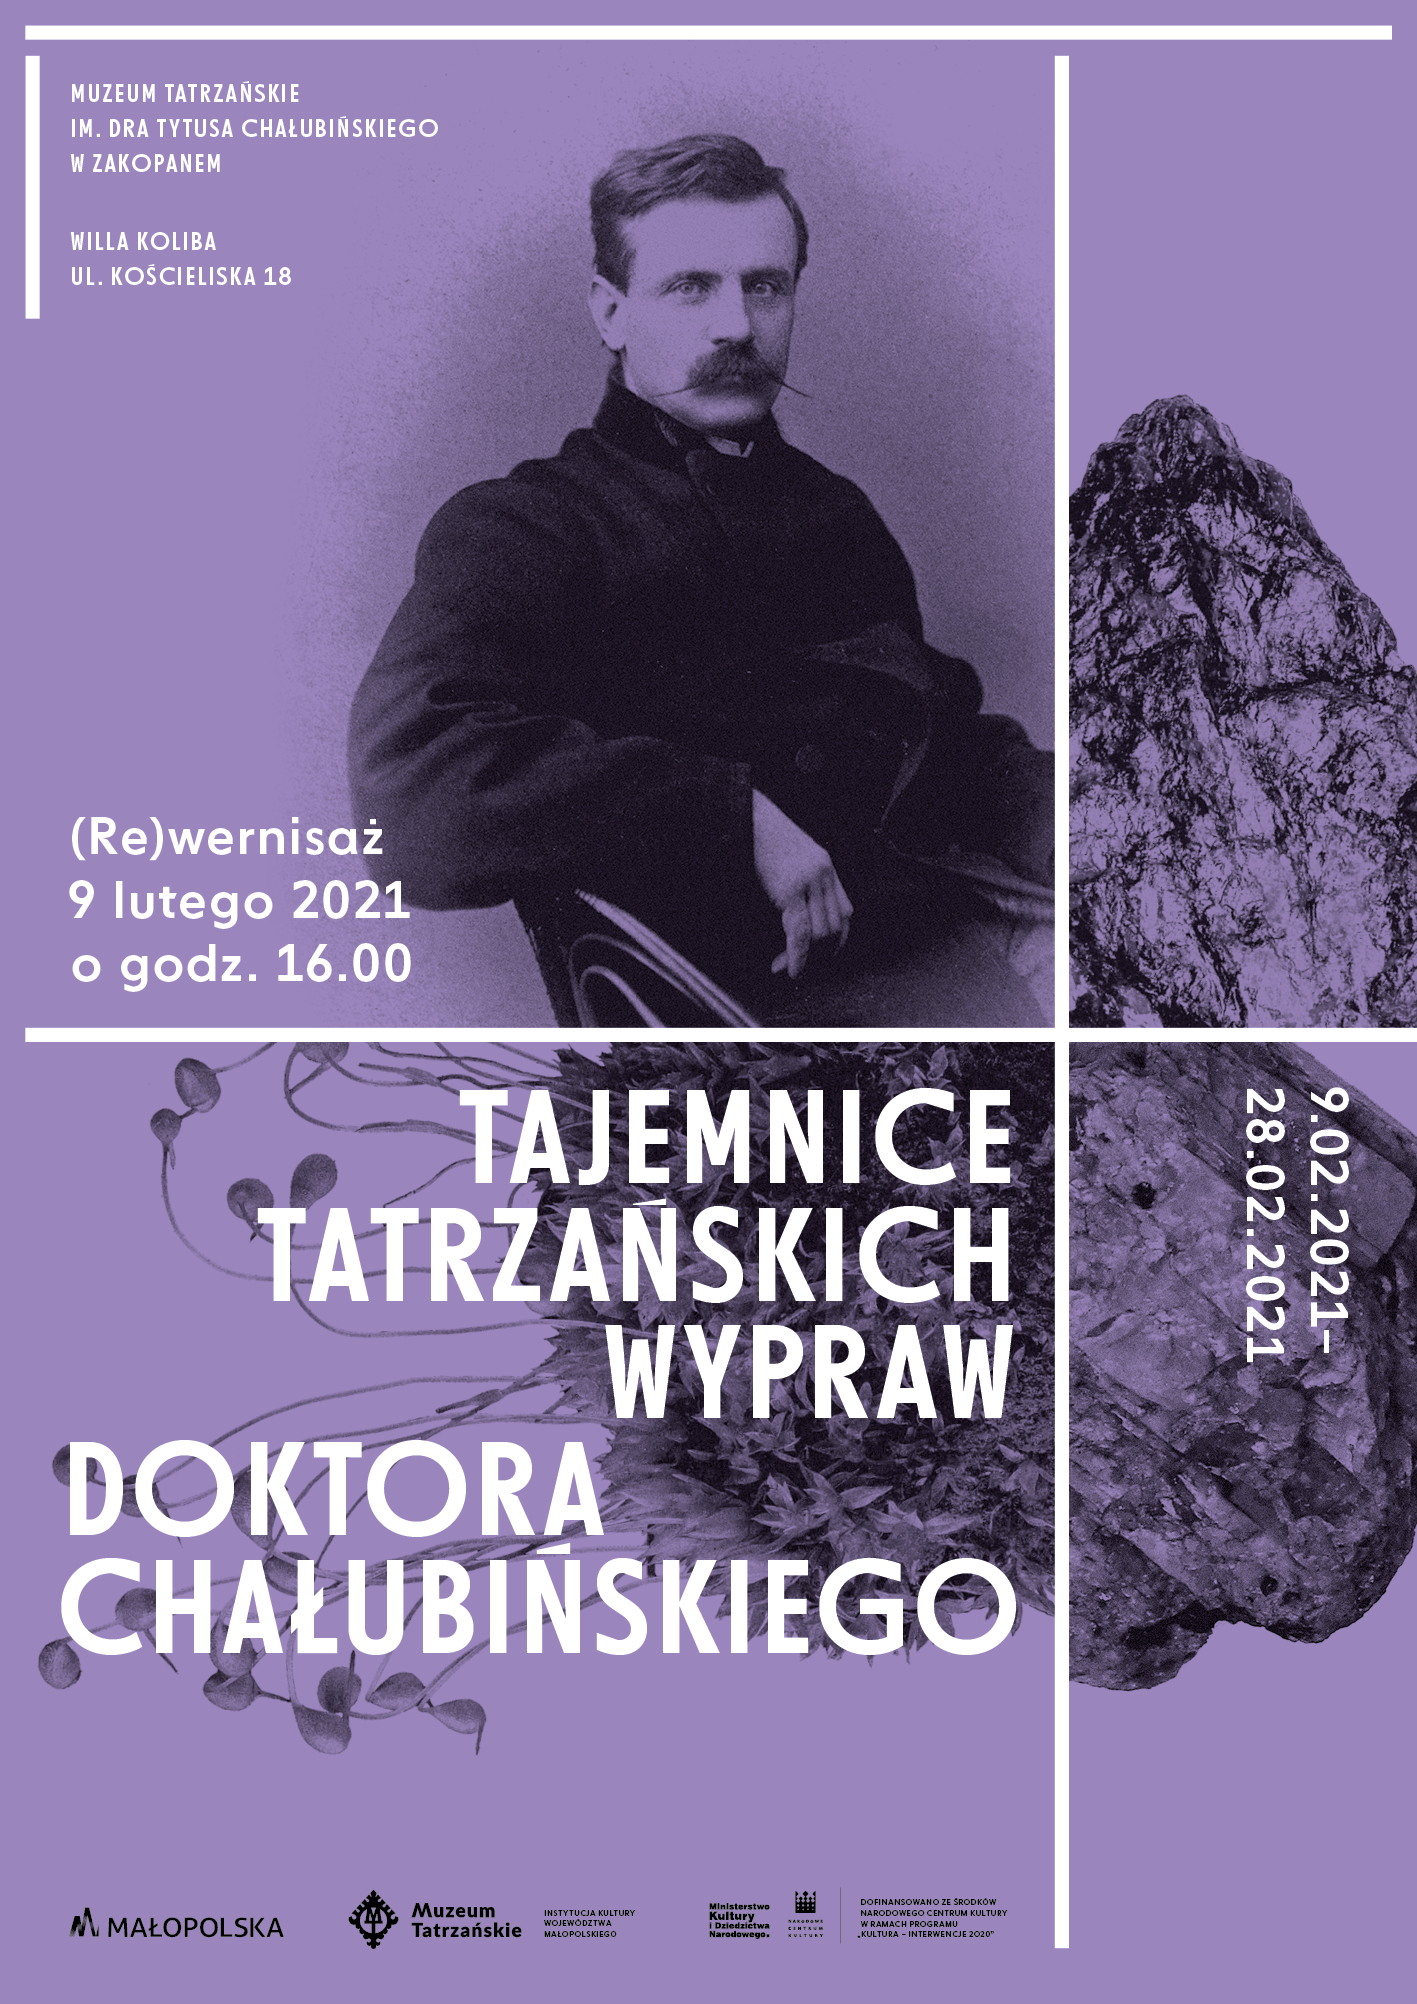 (Re)wernisaż wystawy o Tytusie Chałubińskim. Serdecznie zapraszamy!